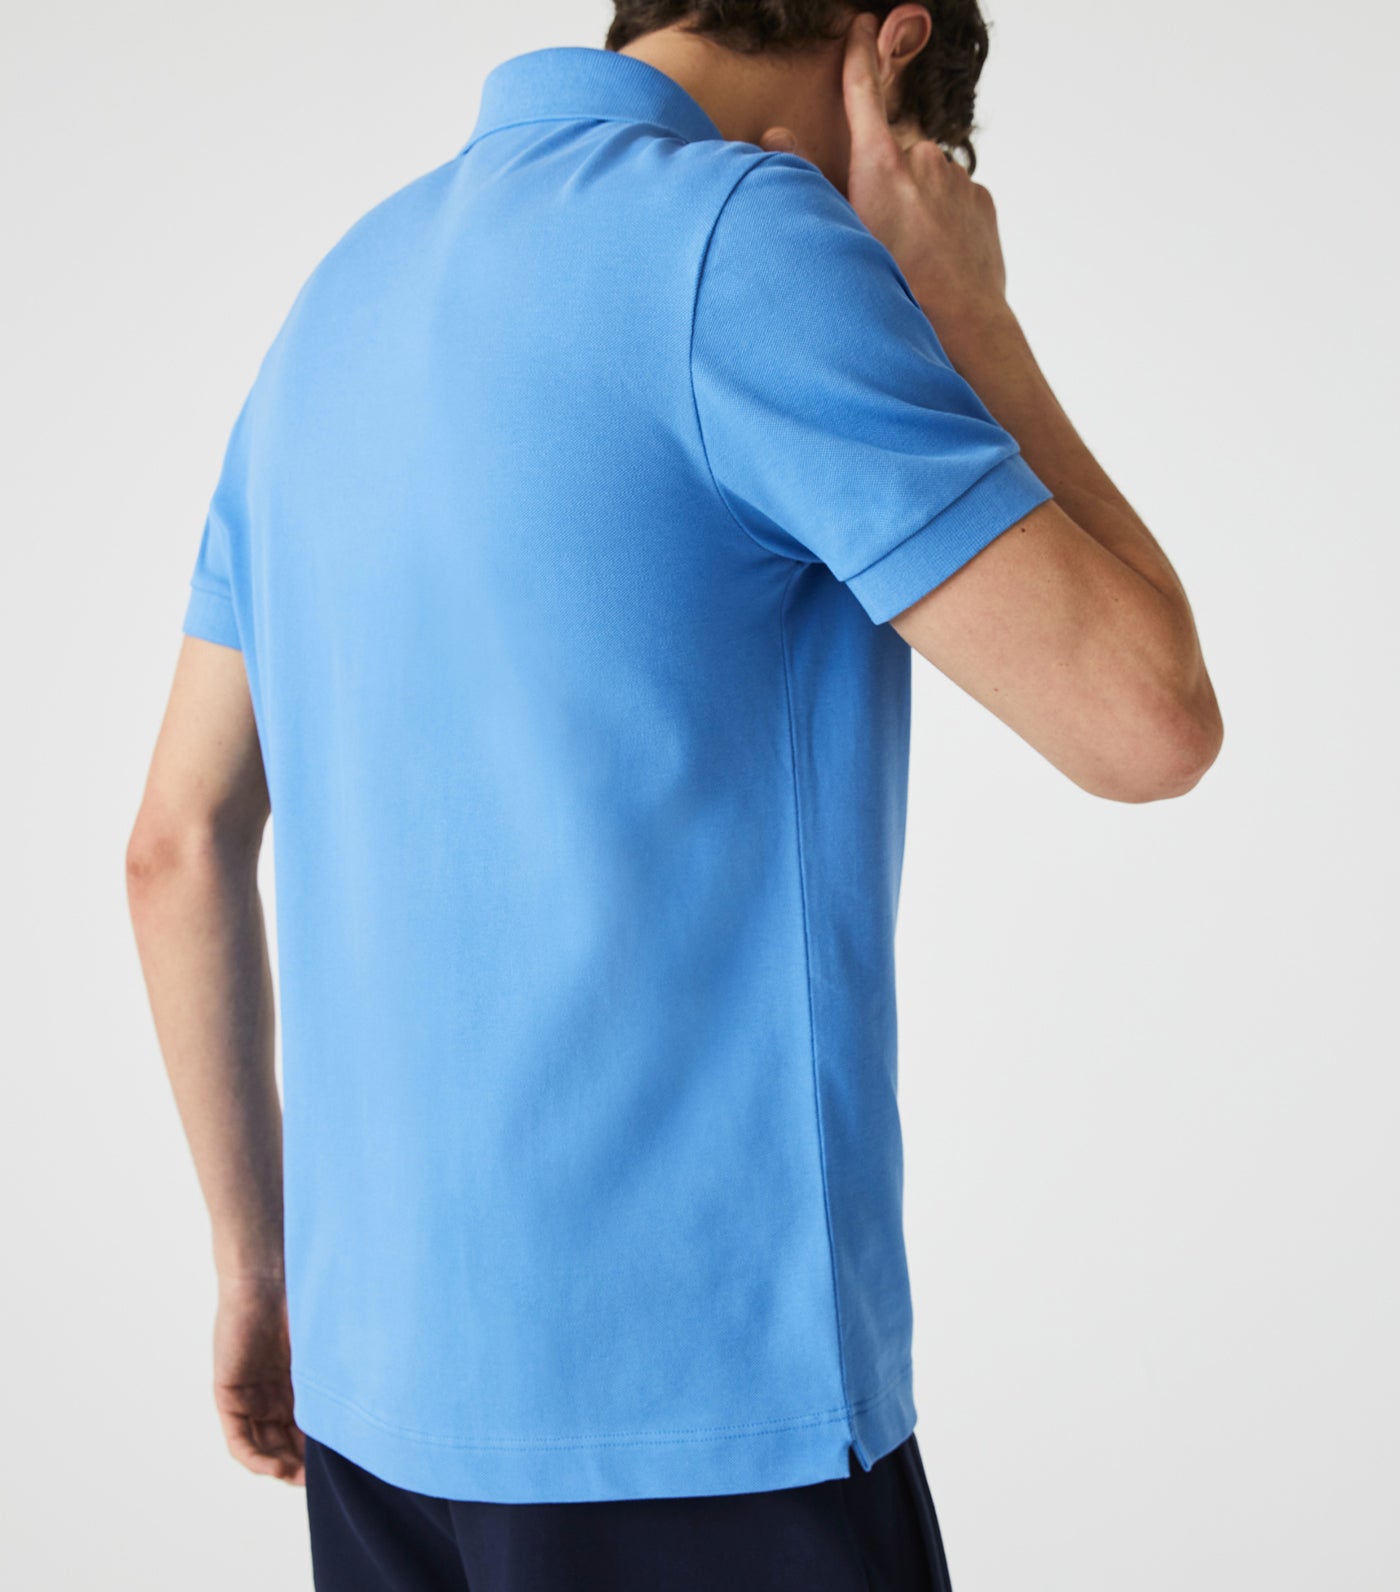 Men's Paris Polo Shirt Regular Fit Stretch Cotton Piqué Ethereal